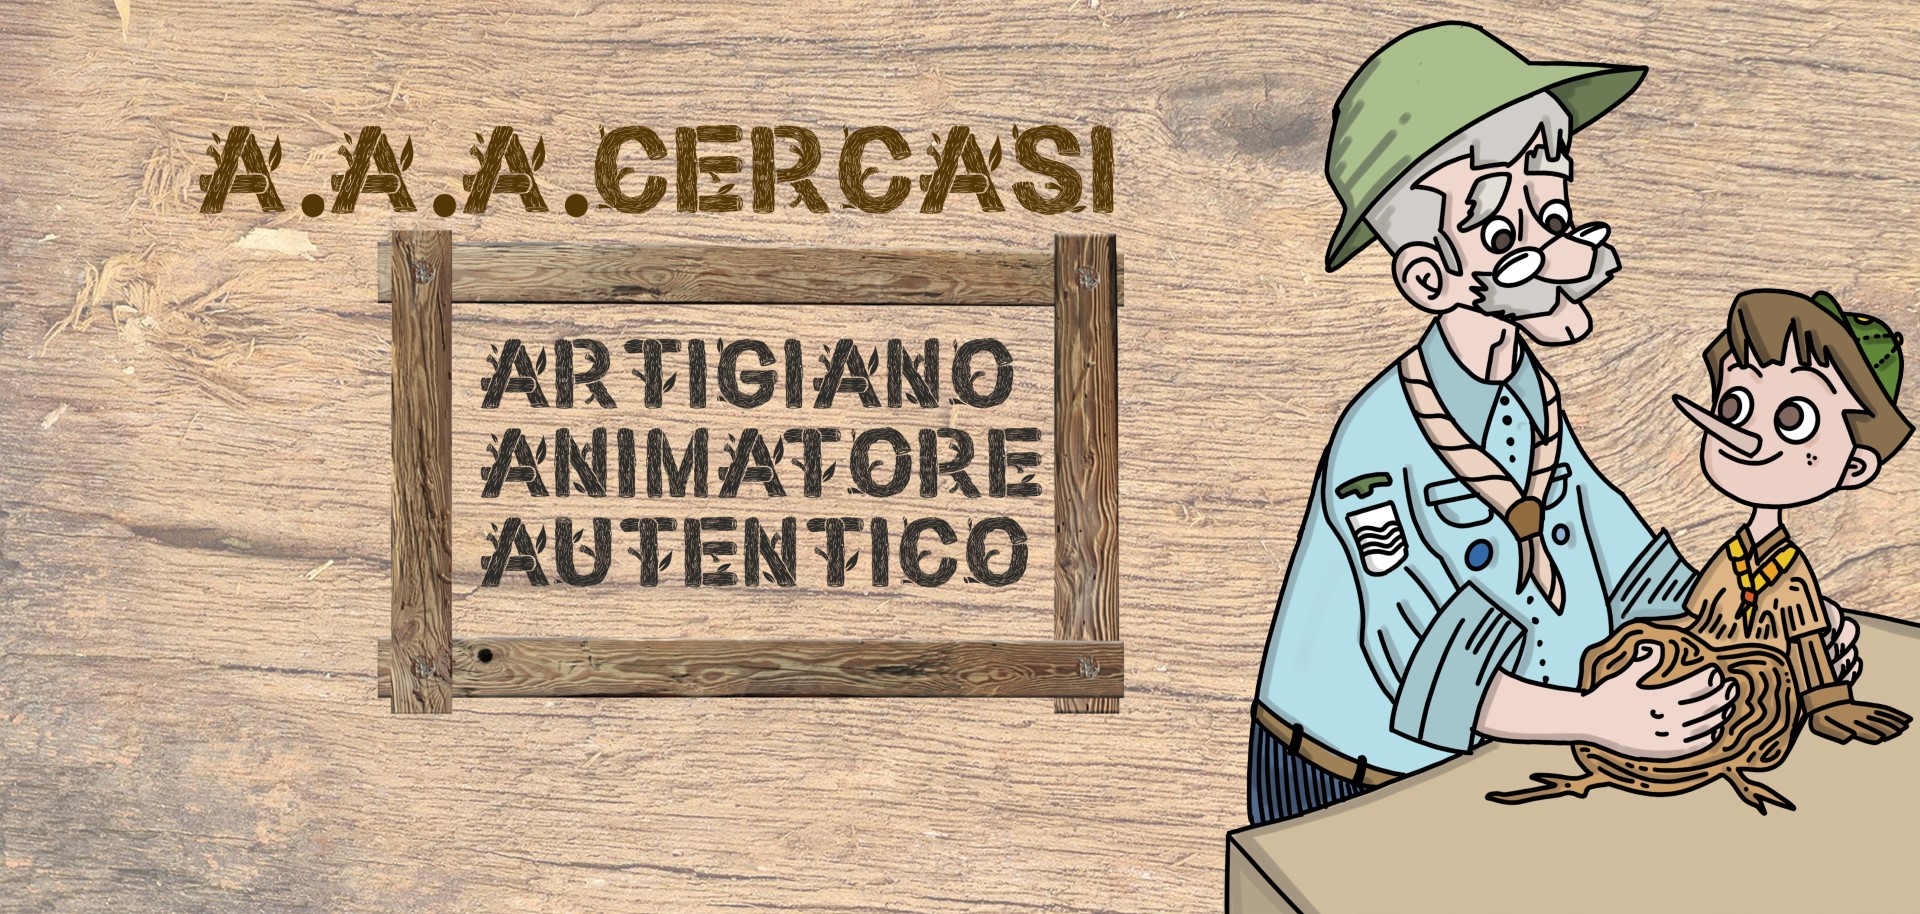 A.A.A. CERCASI! Artigiano Animatore Autentico